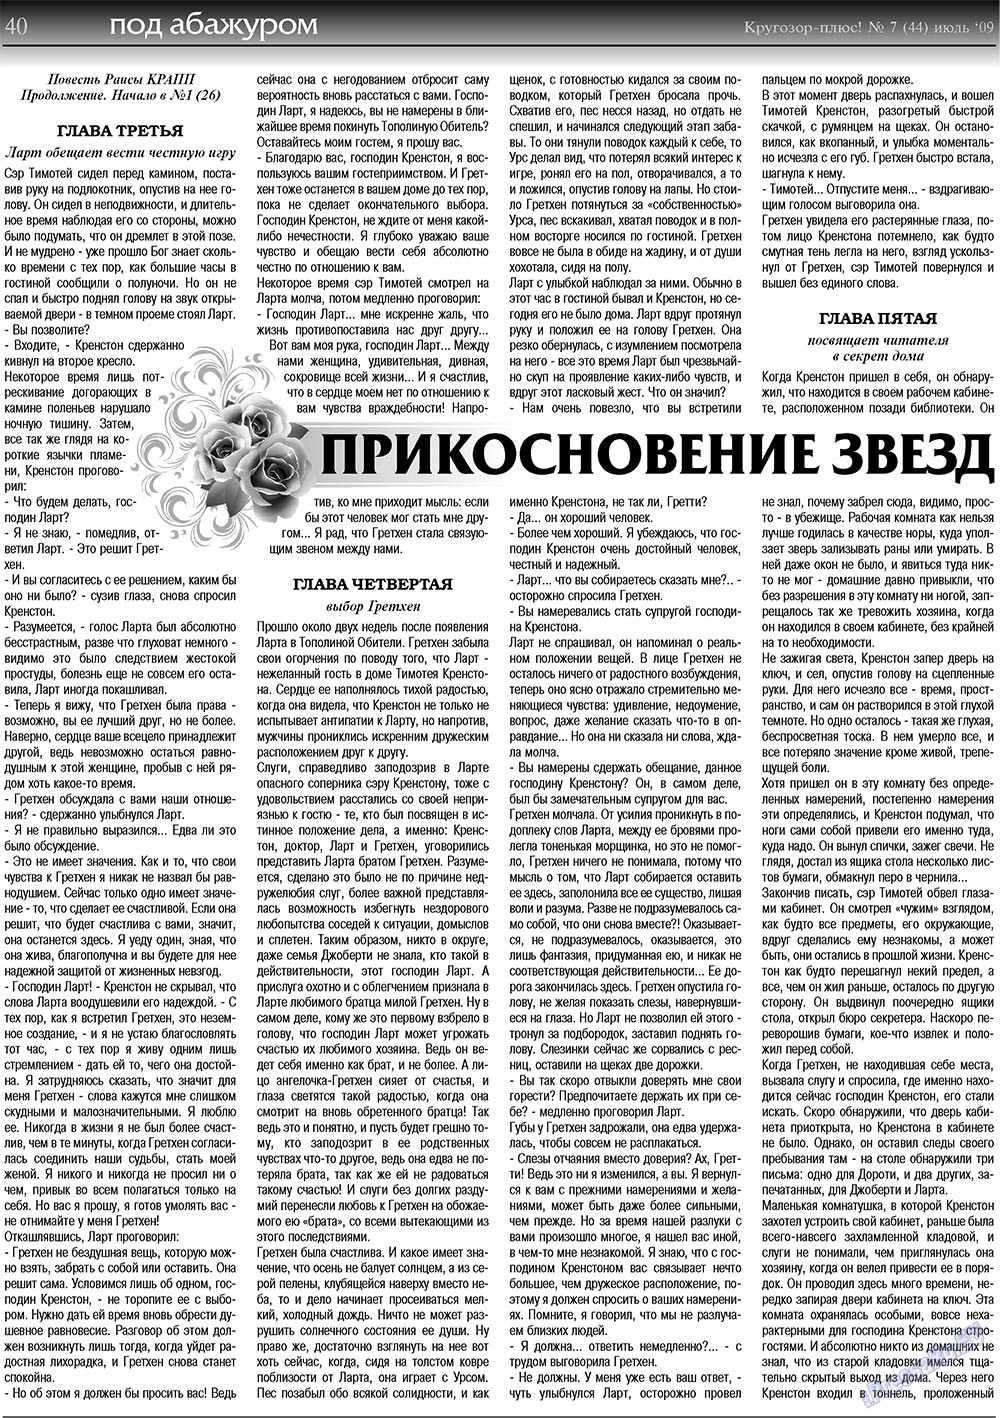 Кругозор плюс!, газета. 2009 №7 стр.40